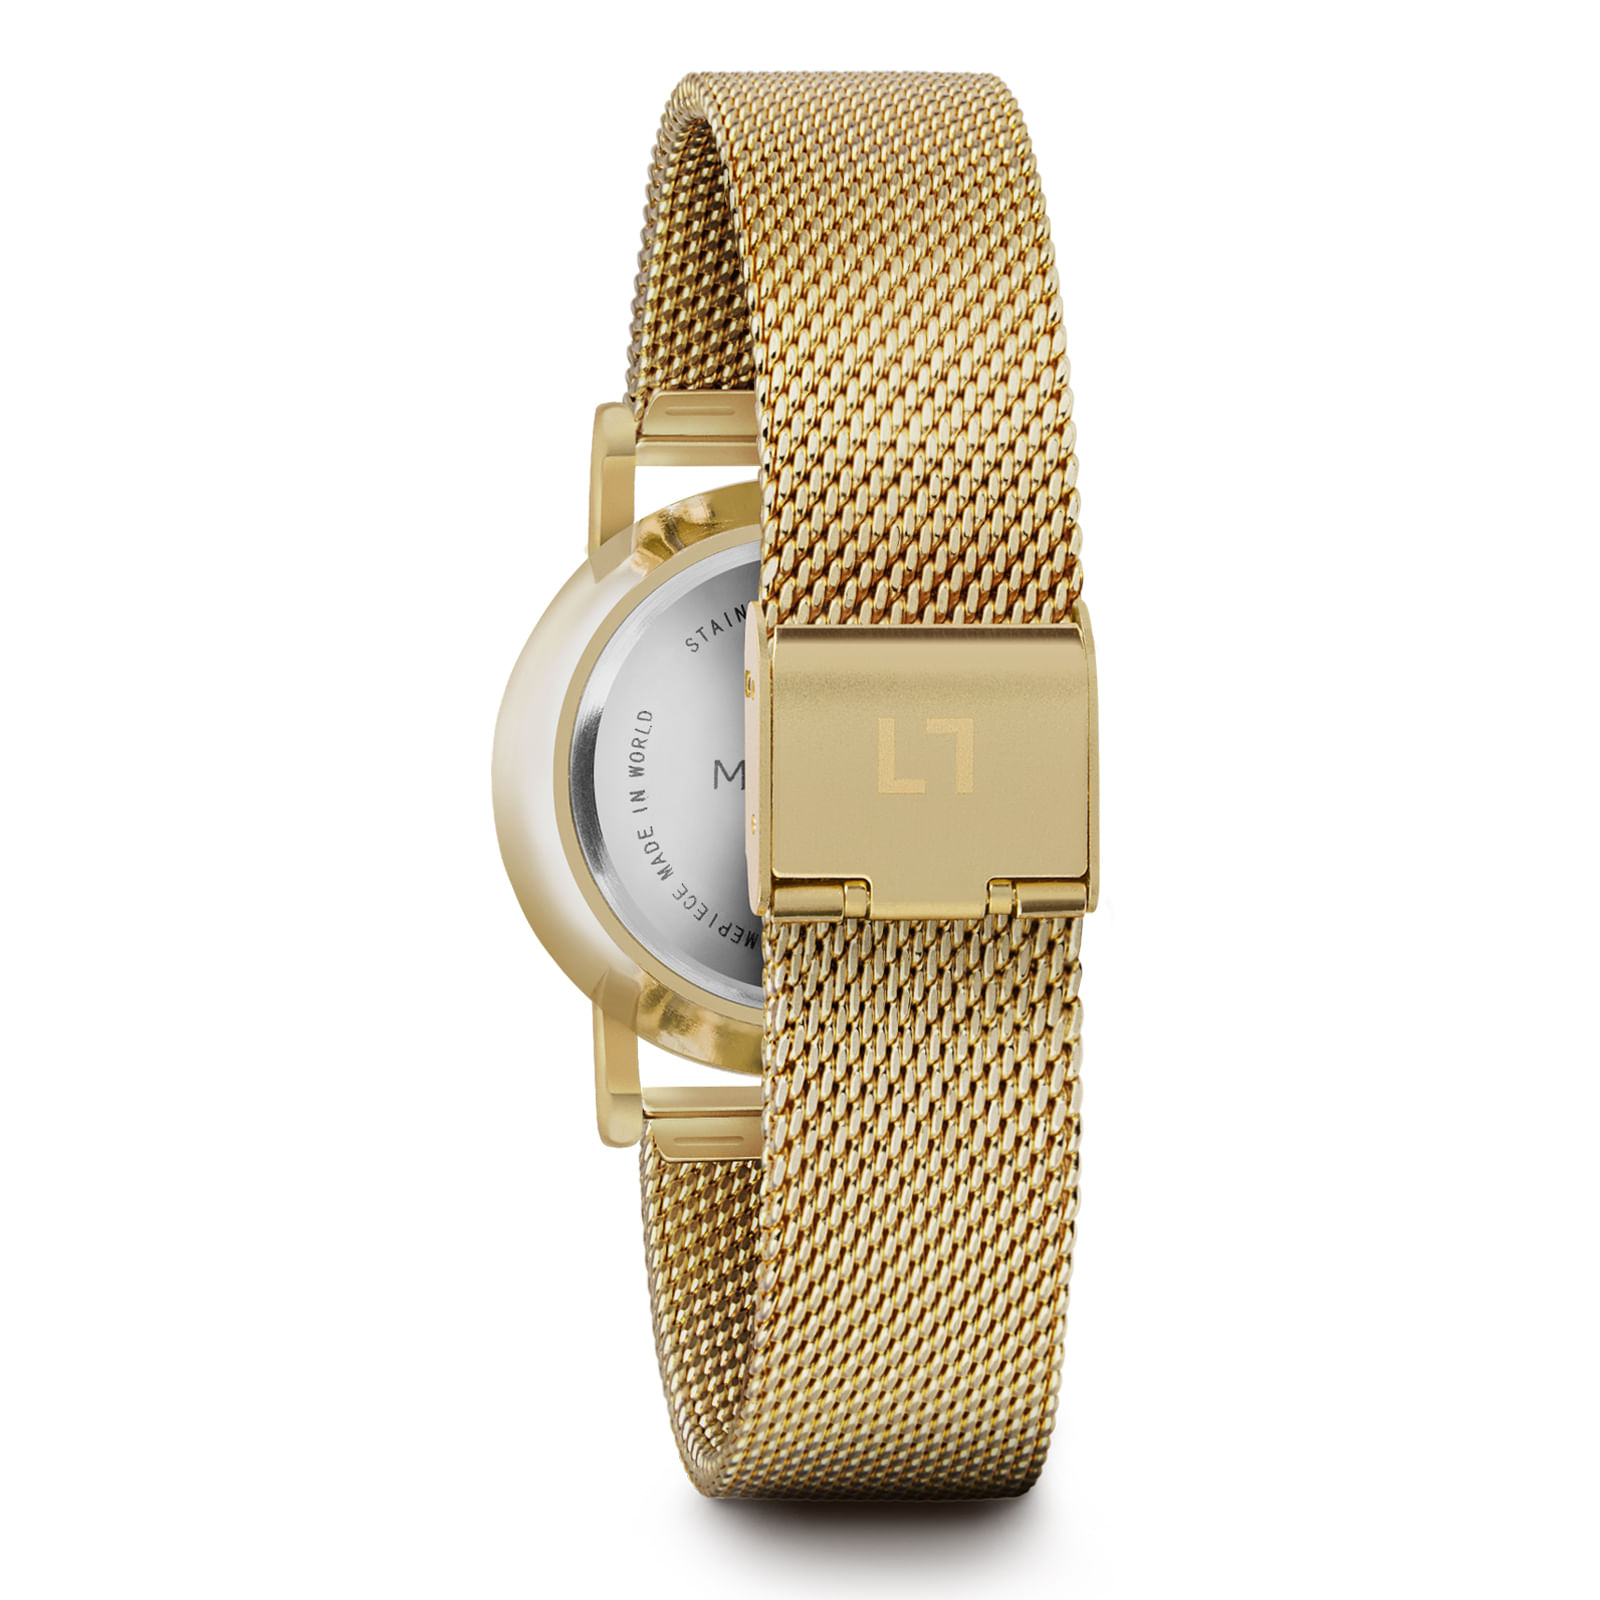 Reloj MILLNER Mini · Gold Acero Mujer